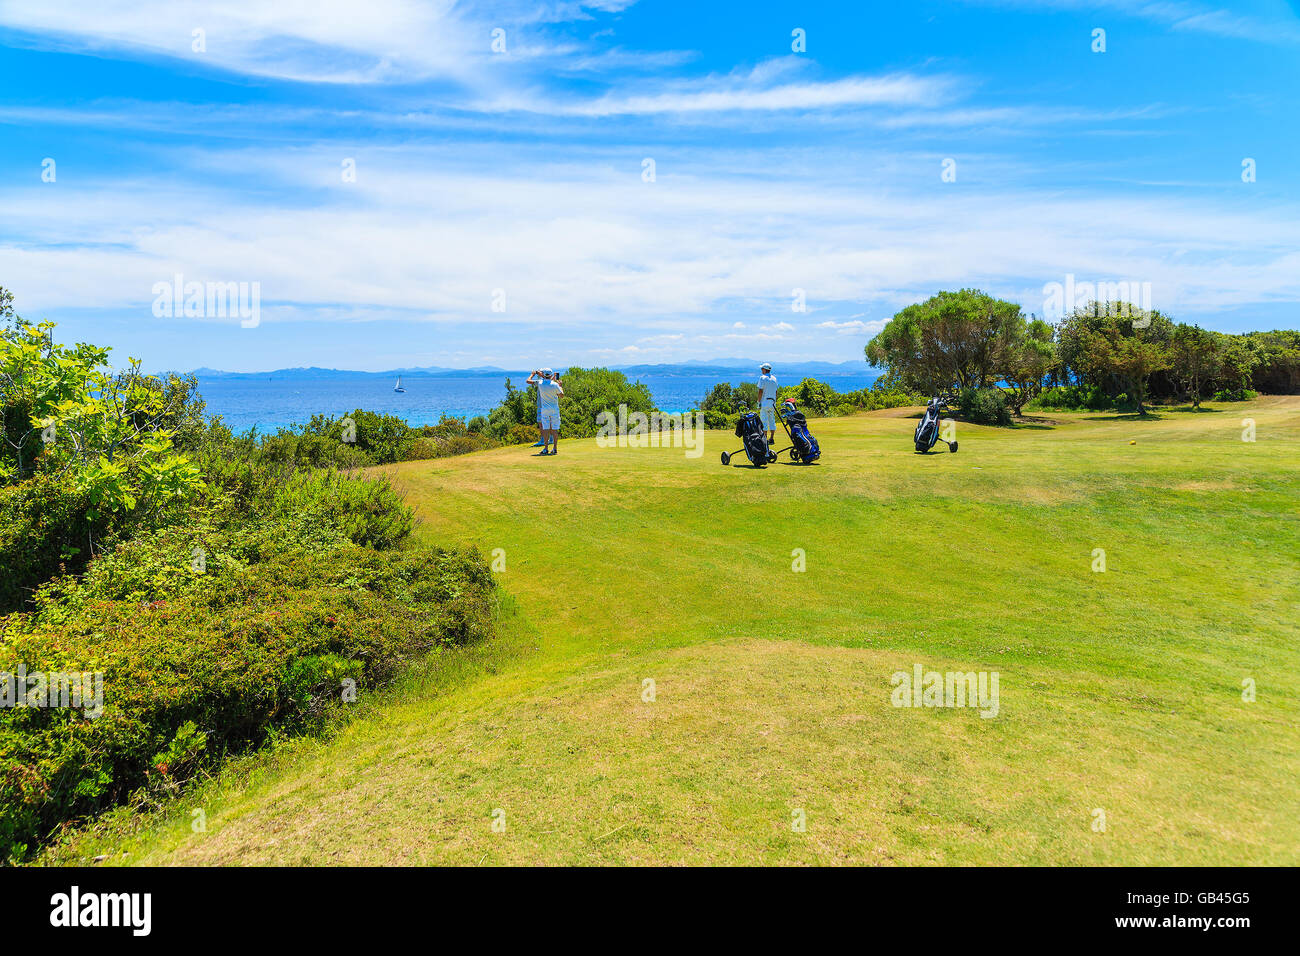 Los golfistas no identificados en la zona de hierba verde del campo de golf mirando al hermoso mar, la isla de Córcega, Francia Foto de stock